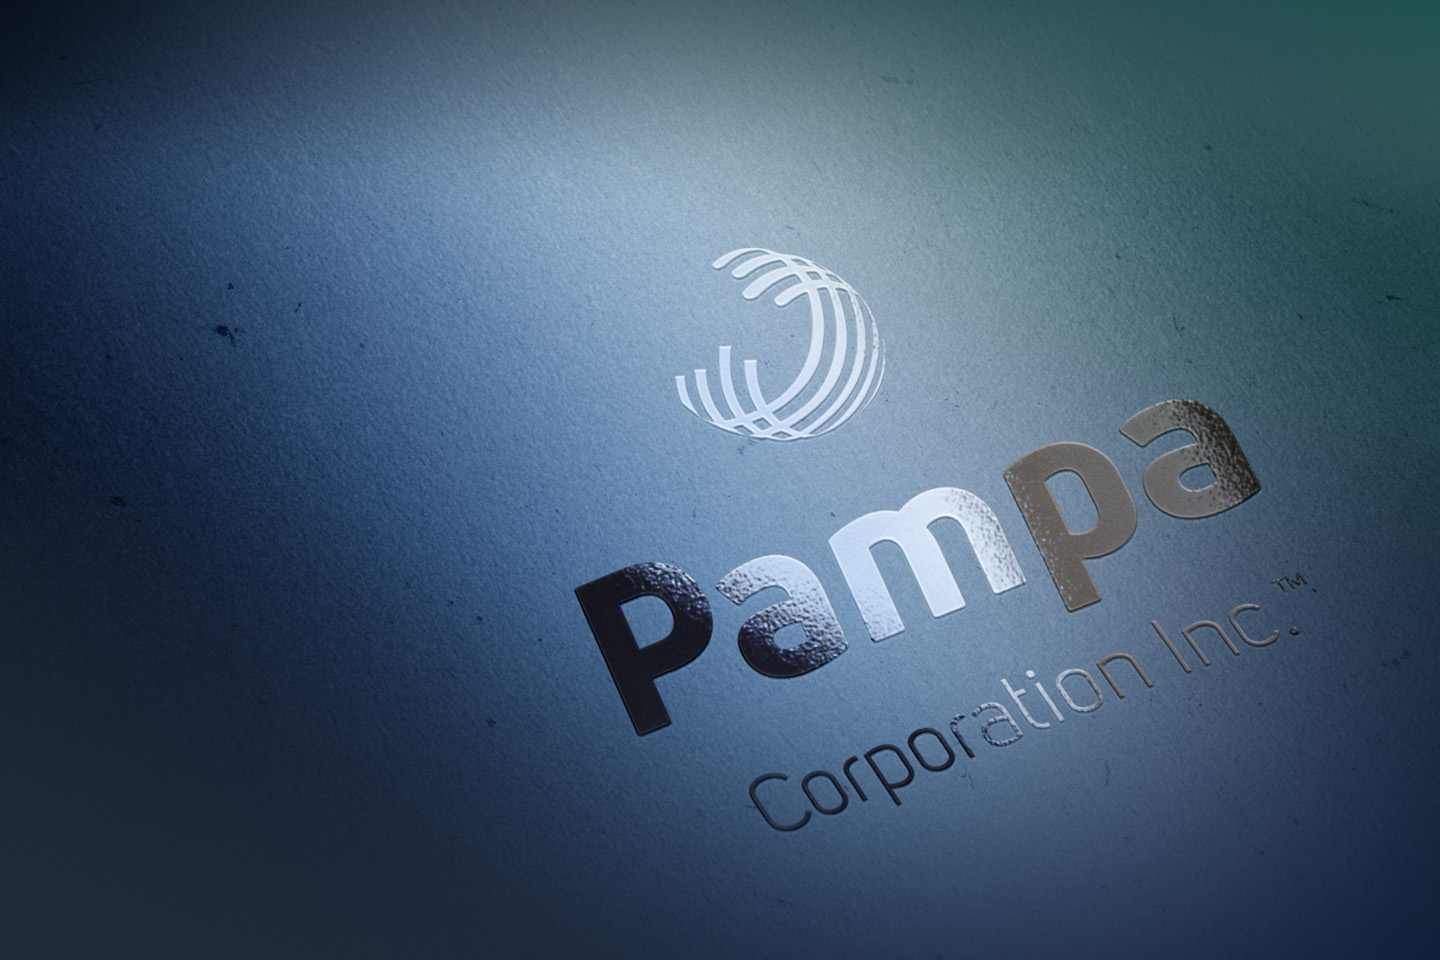 Pampa Corporation